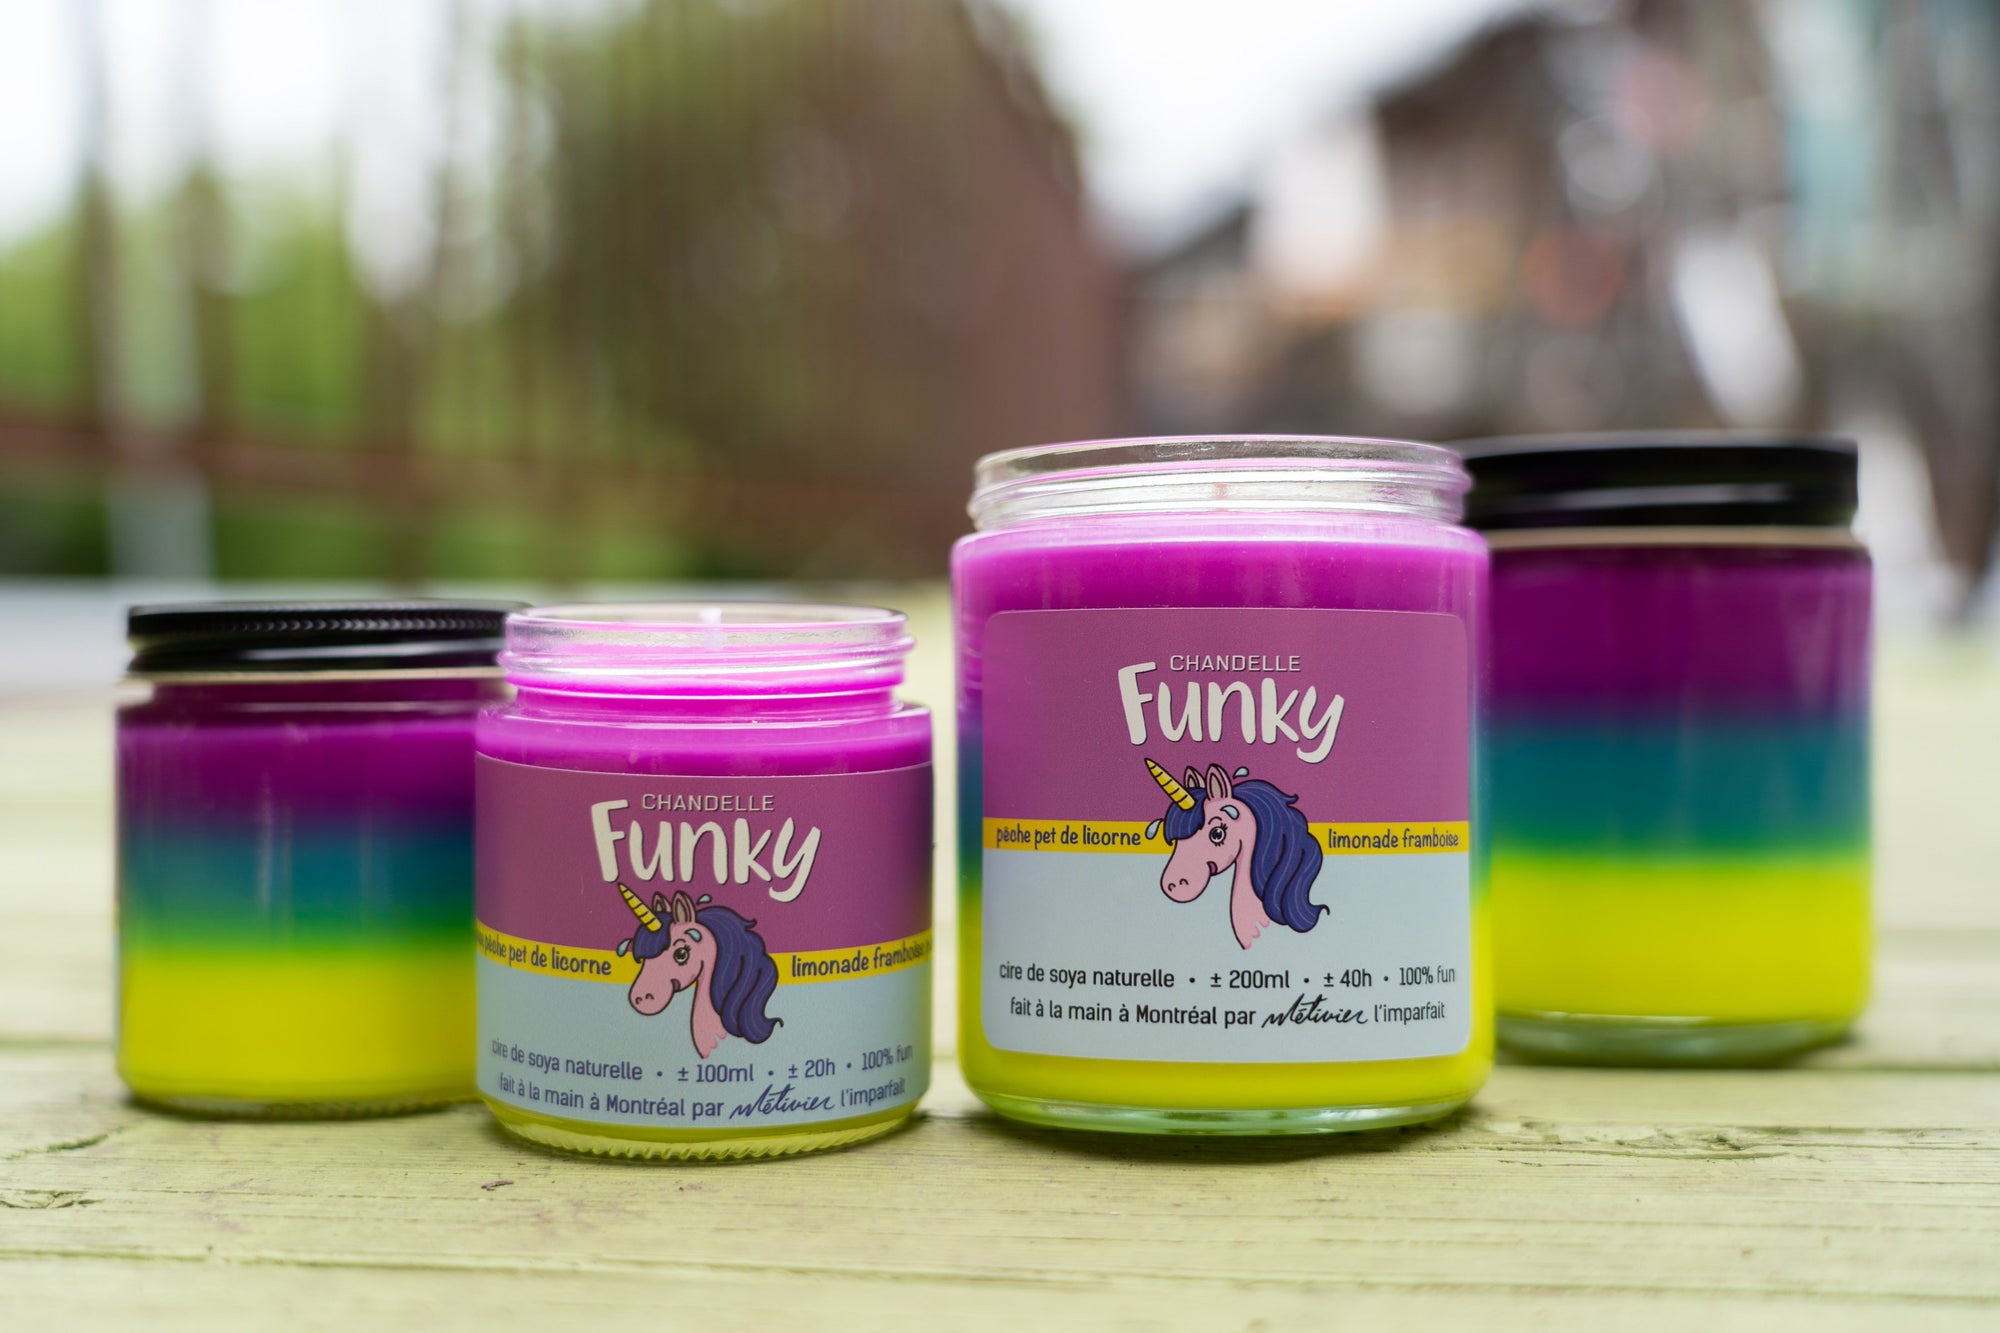 Pet de licorne - Funky - Funky & Co.